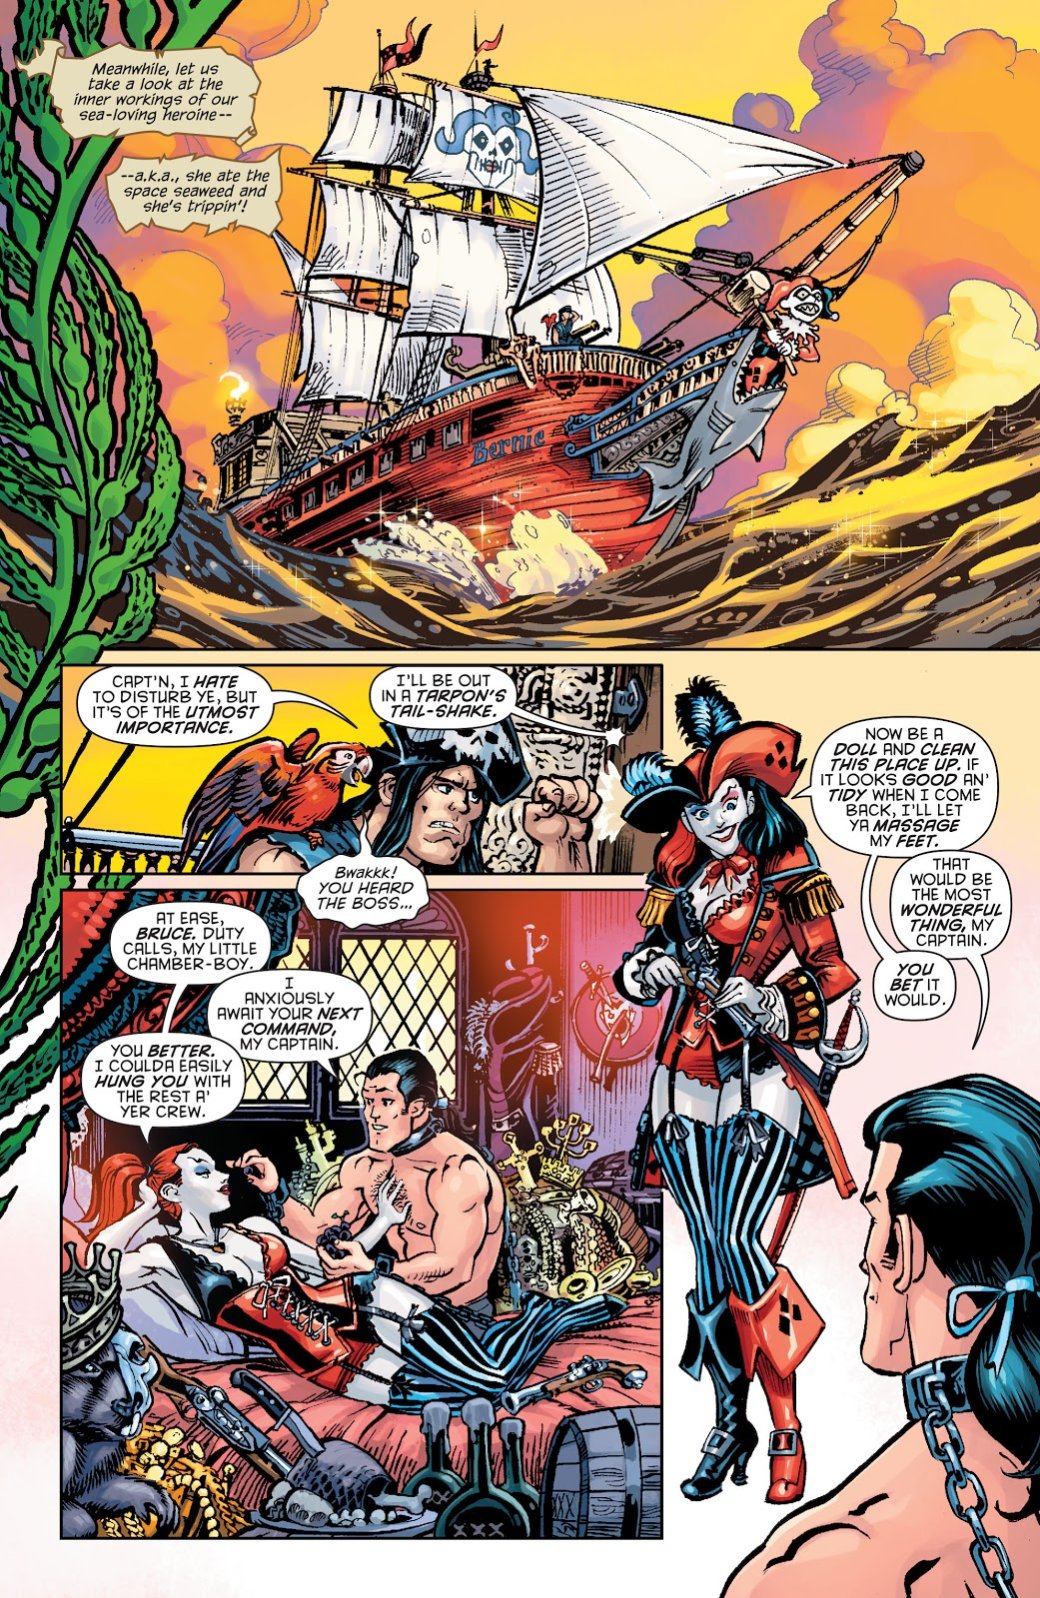 Галерея Галерея. Супергерои Marvel и DC в виде пиратов: Бэтмен, Дэдпул, Существо и другие - 3 фото